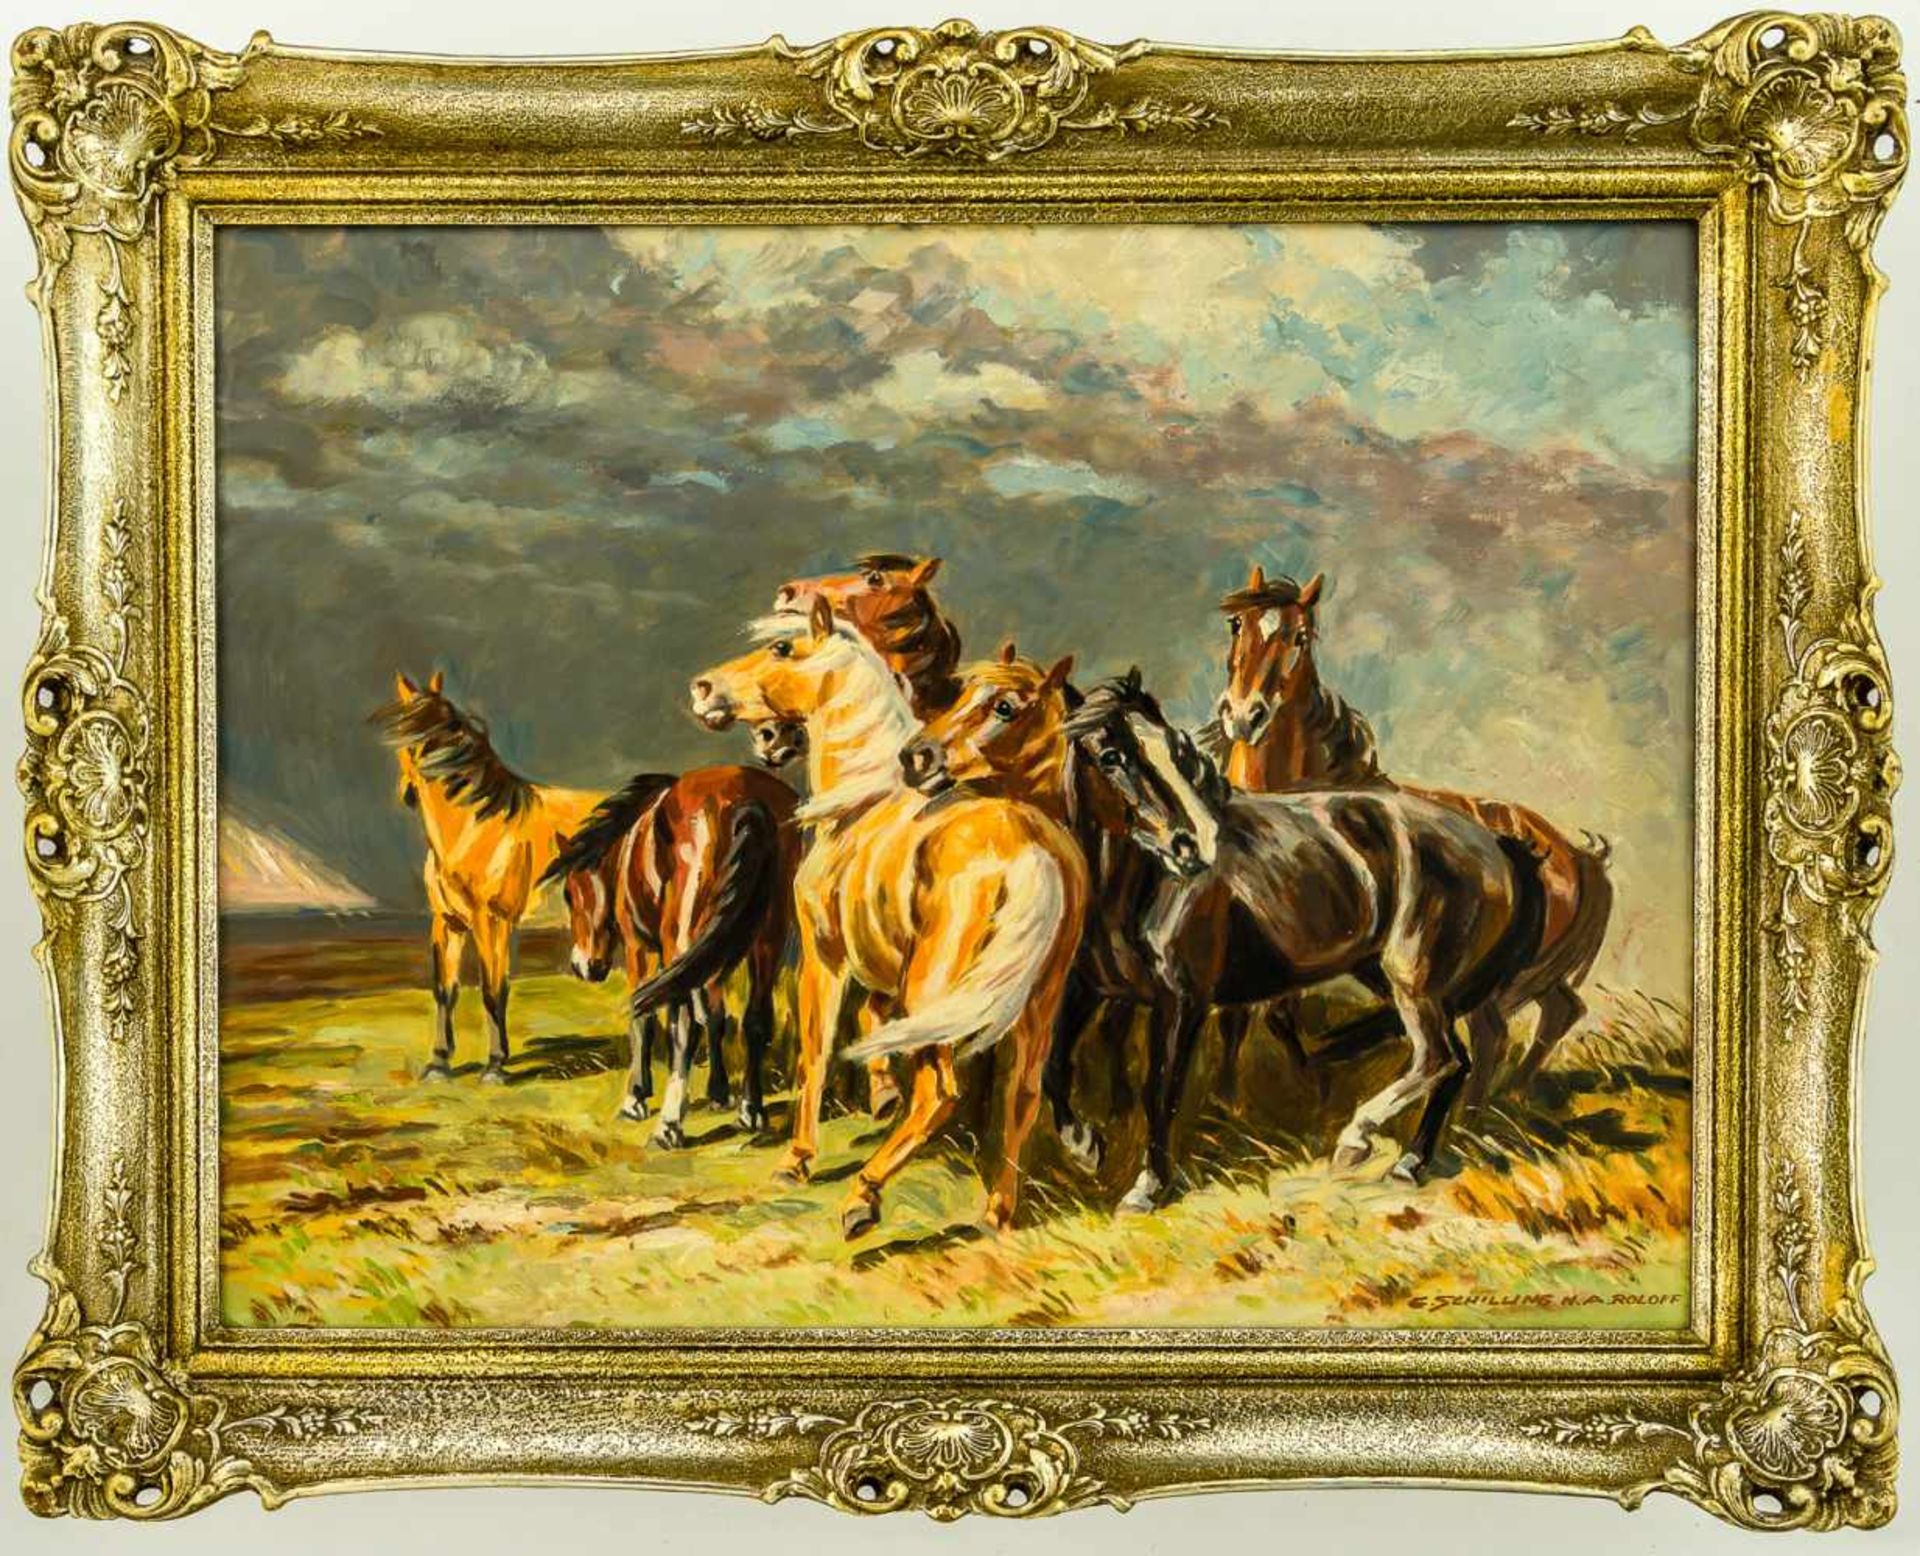 Pferde Öl / Leinwand, rechts unten signiert "E. Schilling N. A. Roloff" 60,5 x 80 cm, mit Rahmen - Bild 2 aus 2